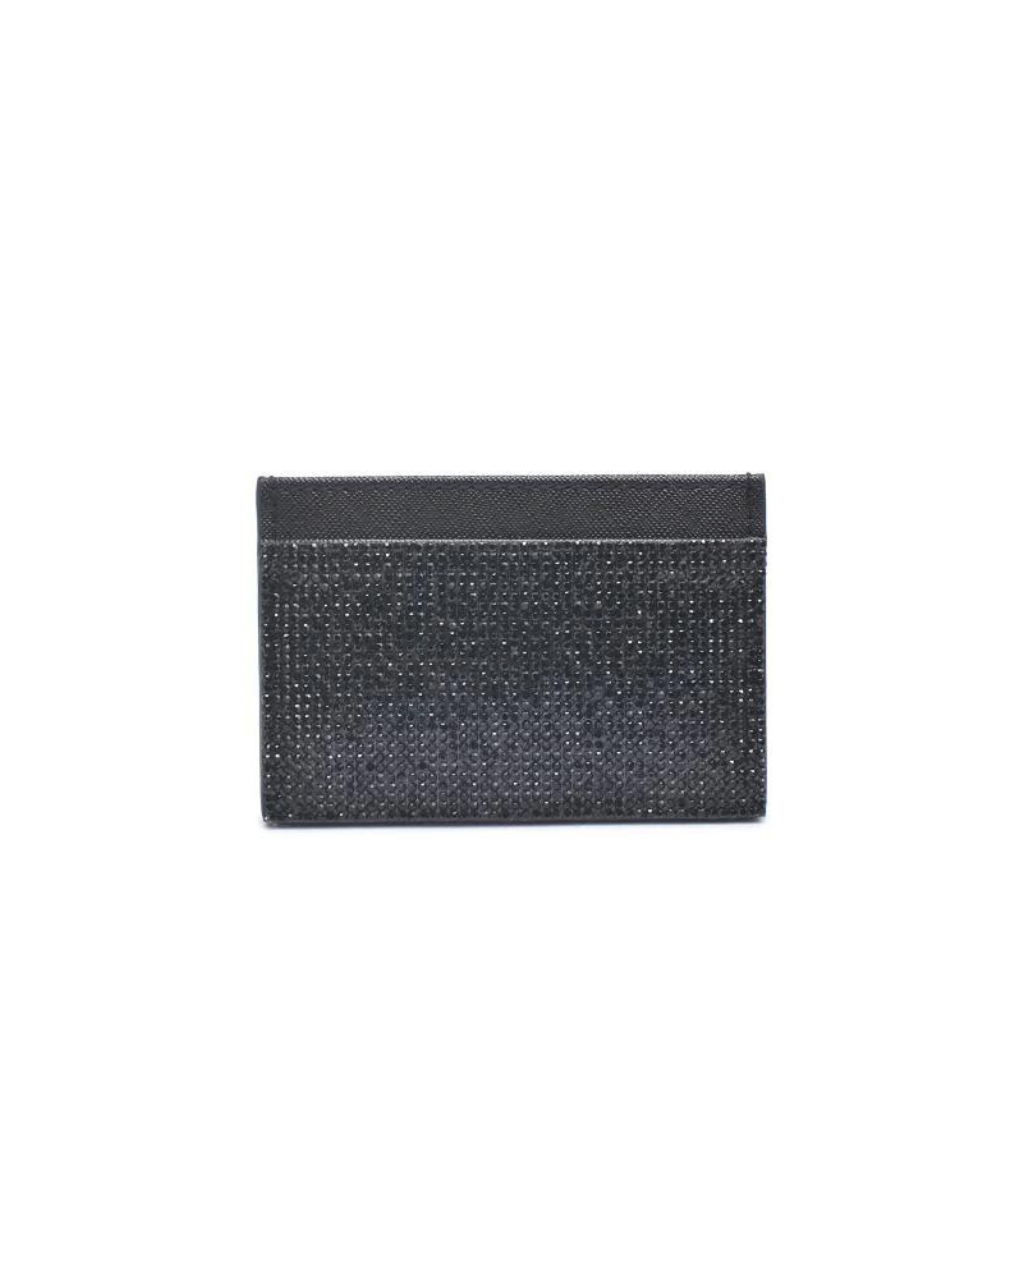 Gigi Cardholder Black, Evening Bag by Urban Expressions | LIT Boutique